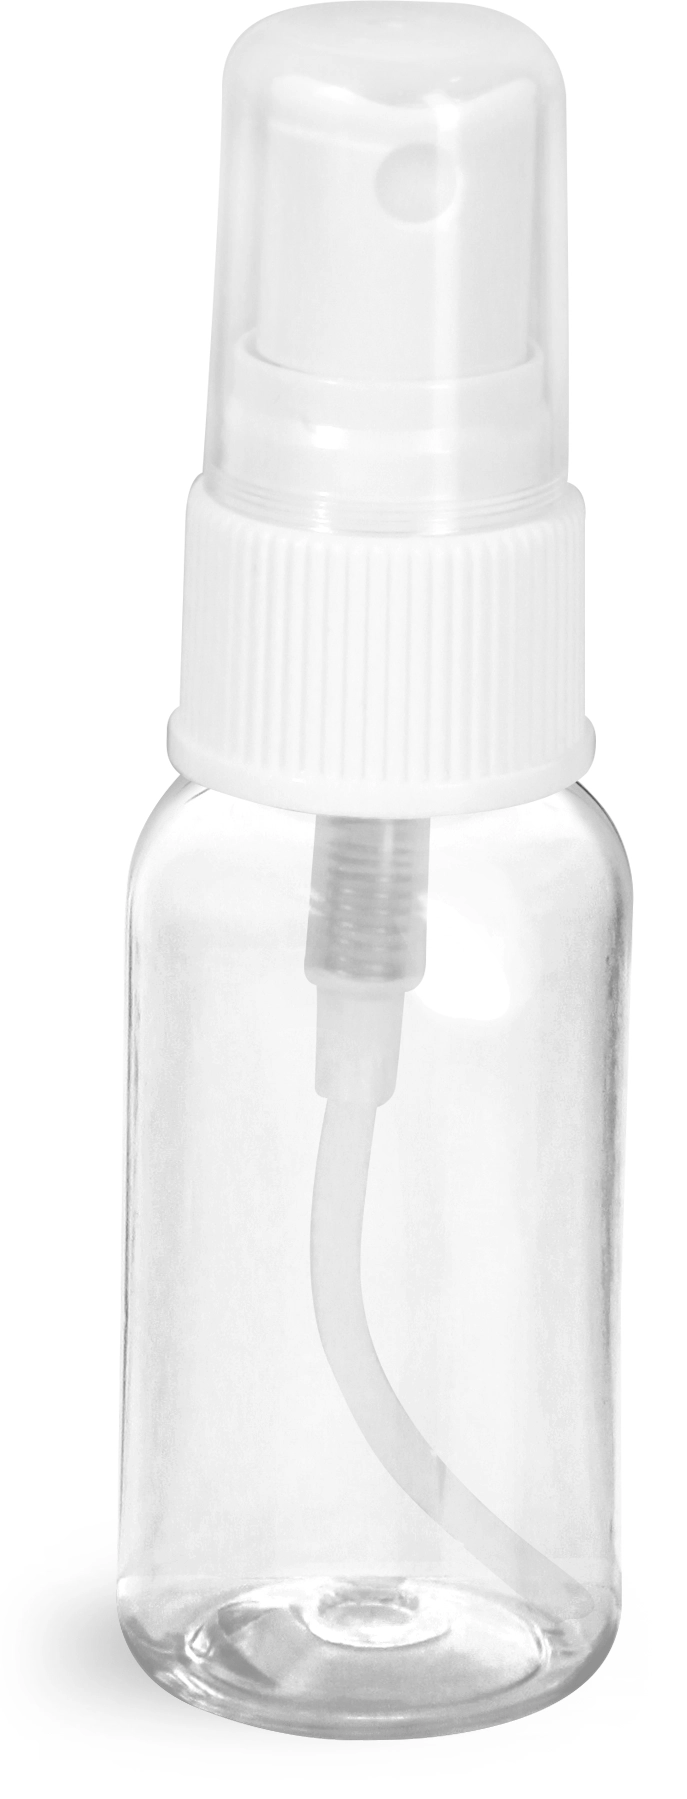 1 oz Clear PET Boston Round Bottles w/ White Fine Mist Sprayers